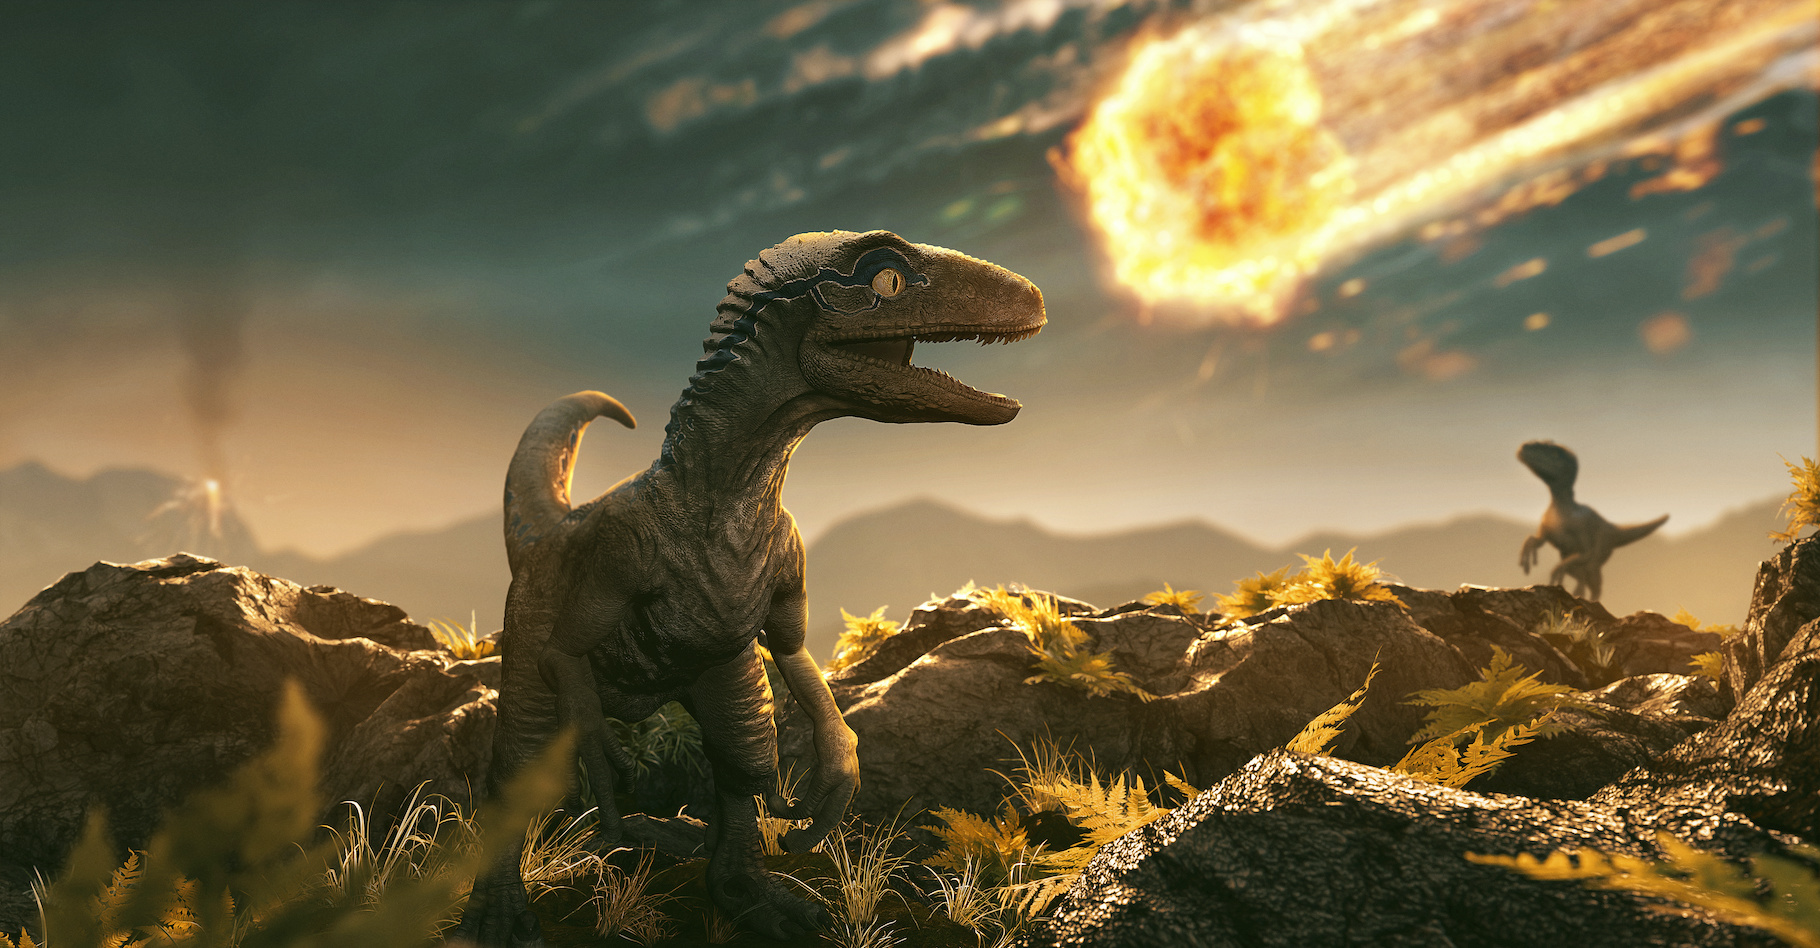 Illustration du cataclysme qui a provoqué l'extinction des dinosaures il y a 66 millions d'années.&nbsp;© lassedesign, Adobe Stock